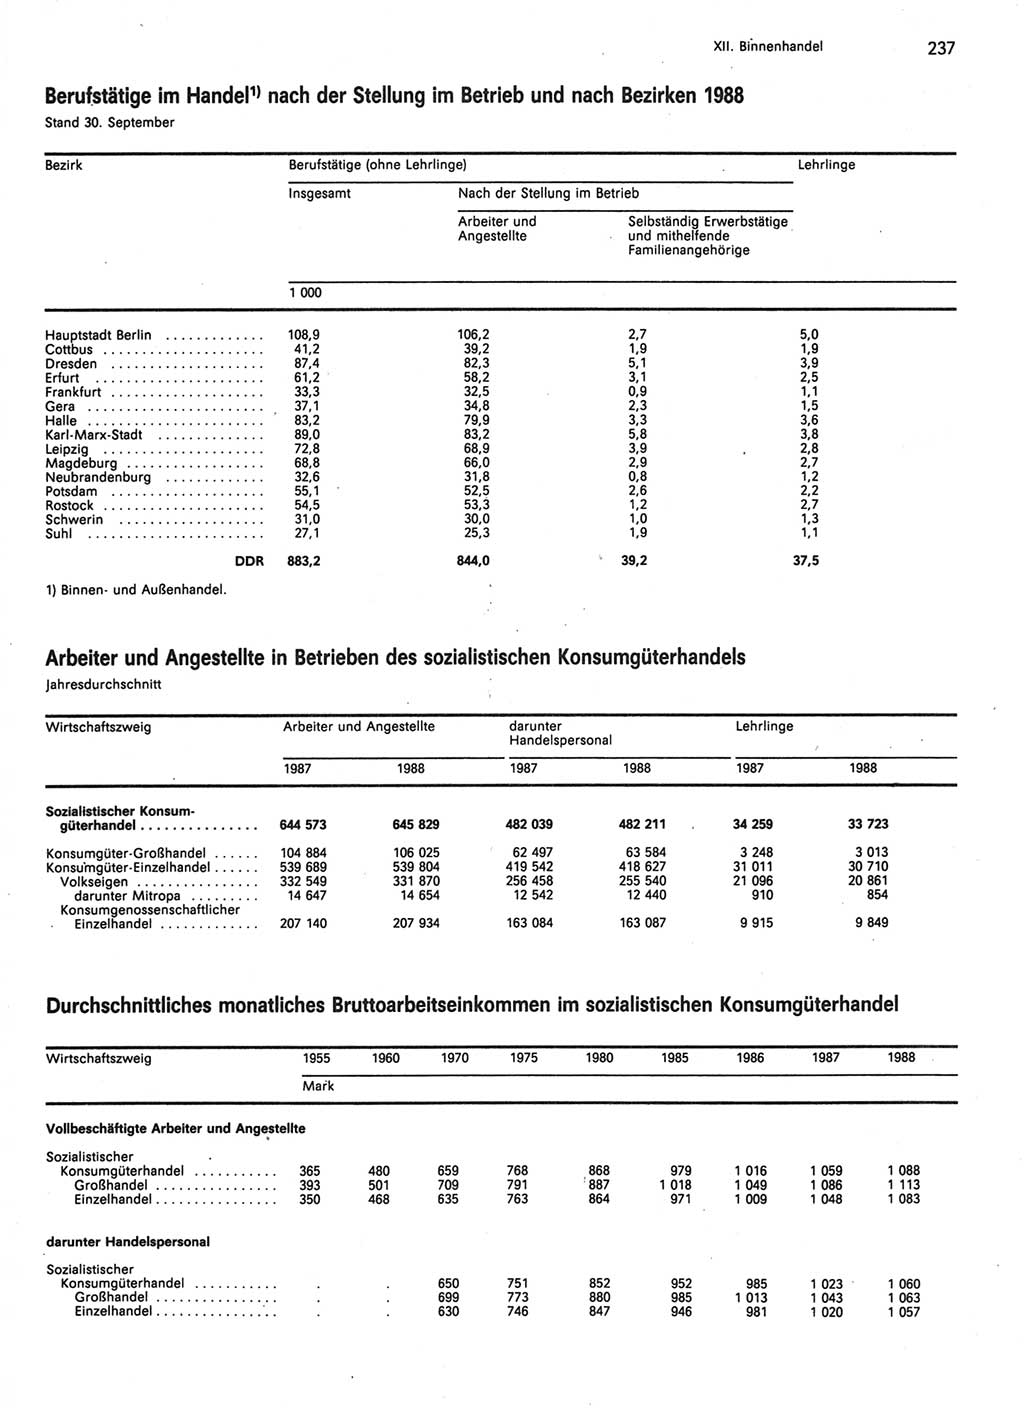 Statistisches Jahrbuch der Deutschen Demokratischen Republik (DDR) 1989, Seite 237 (Stat. Jb. DDR 1989, S. 237)